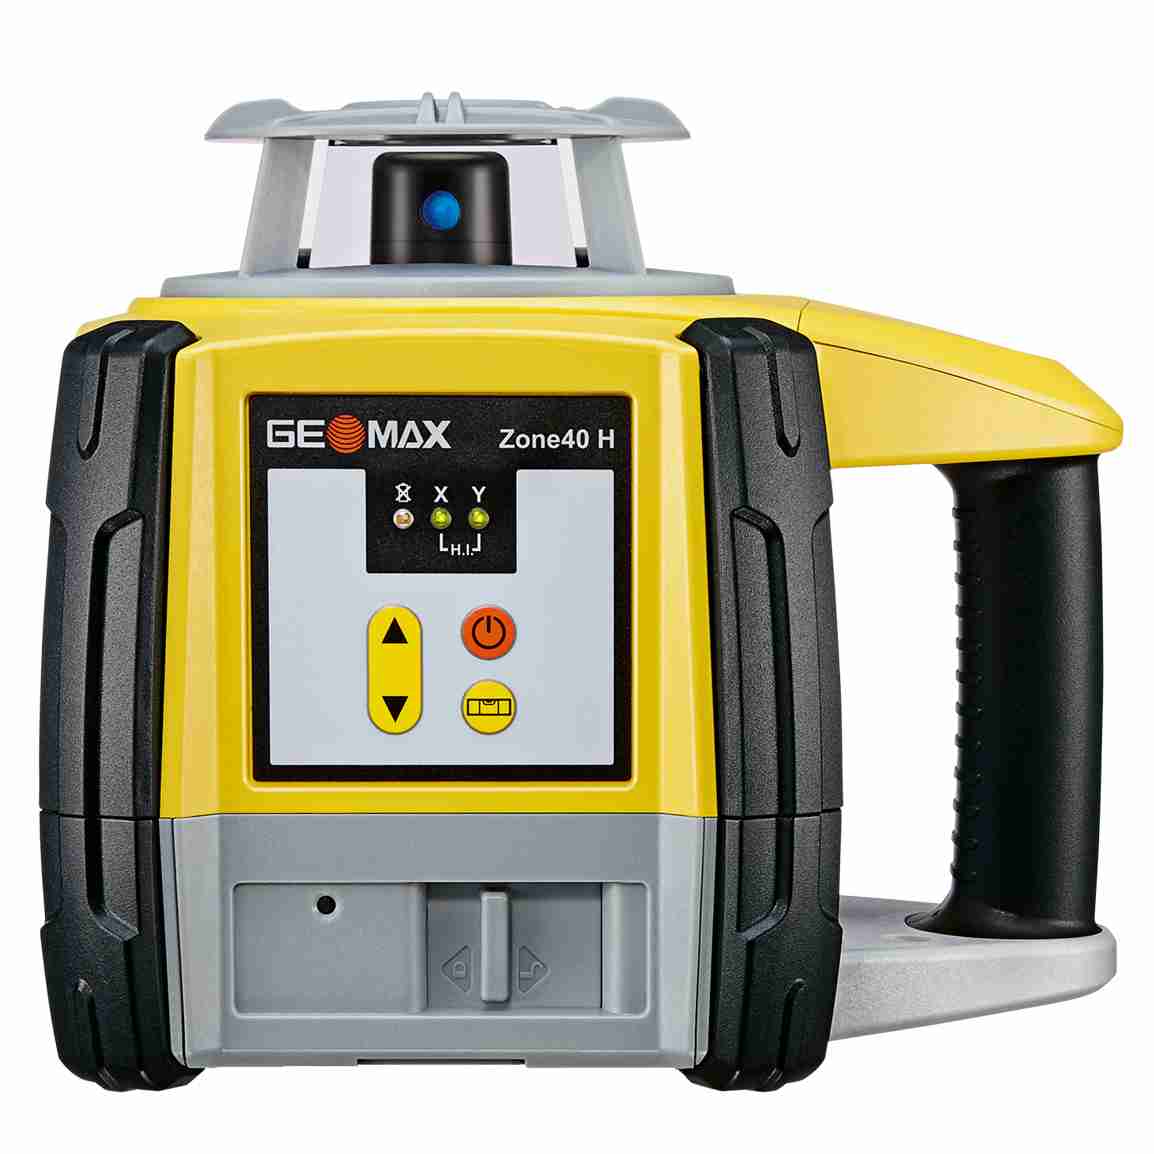 Geomax Zone 40H Laser Level with Pro Rec Alkaline Bat